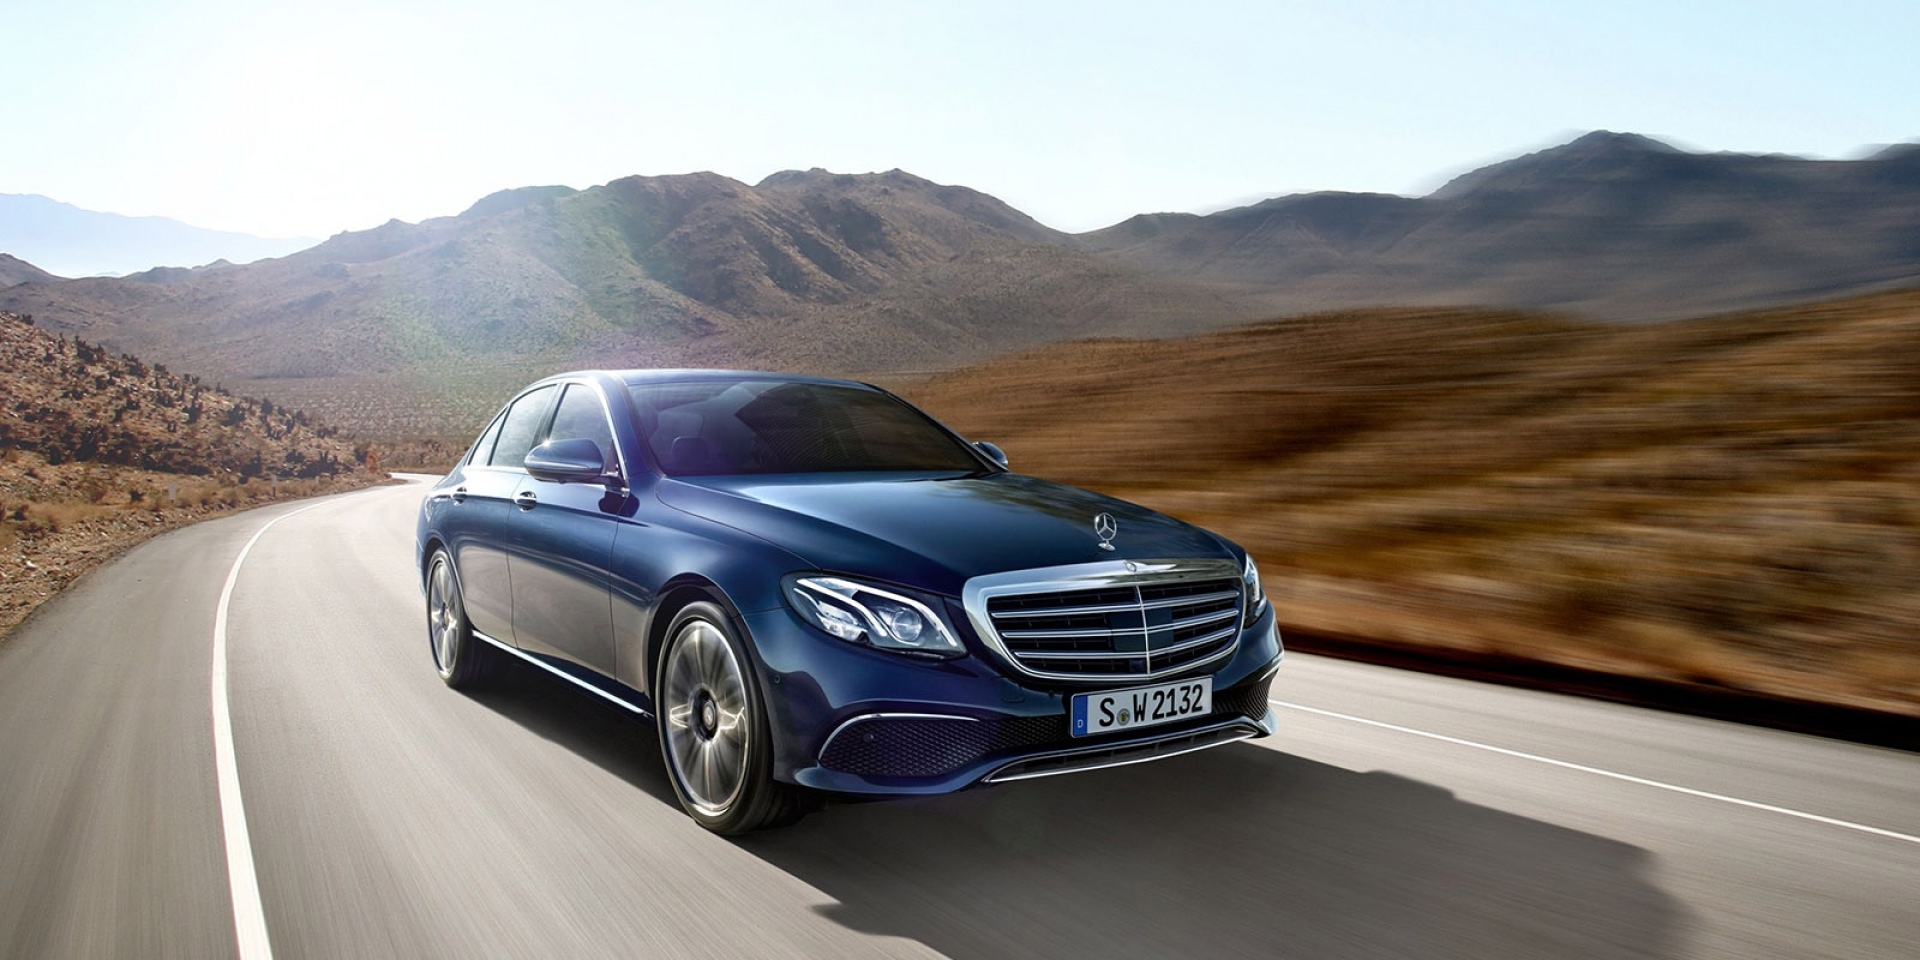 官方新聞稿。Mercedes-Benz 與星同遊購車優惠 熱烈開賣 夏季奢華夢 即刻訂製專屬豪華五星級輕旅行